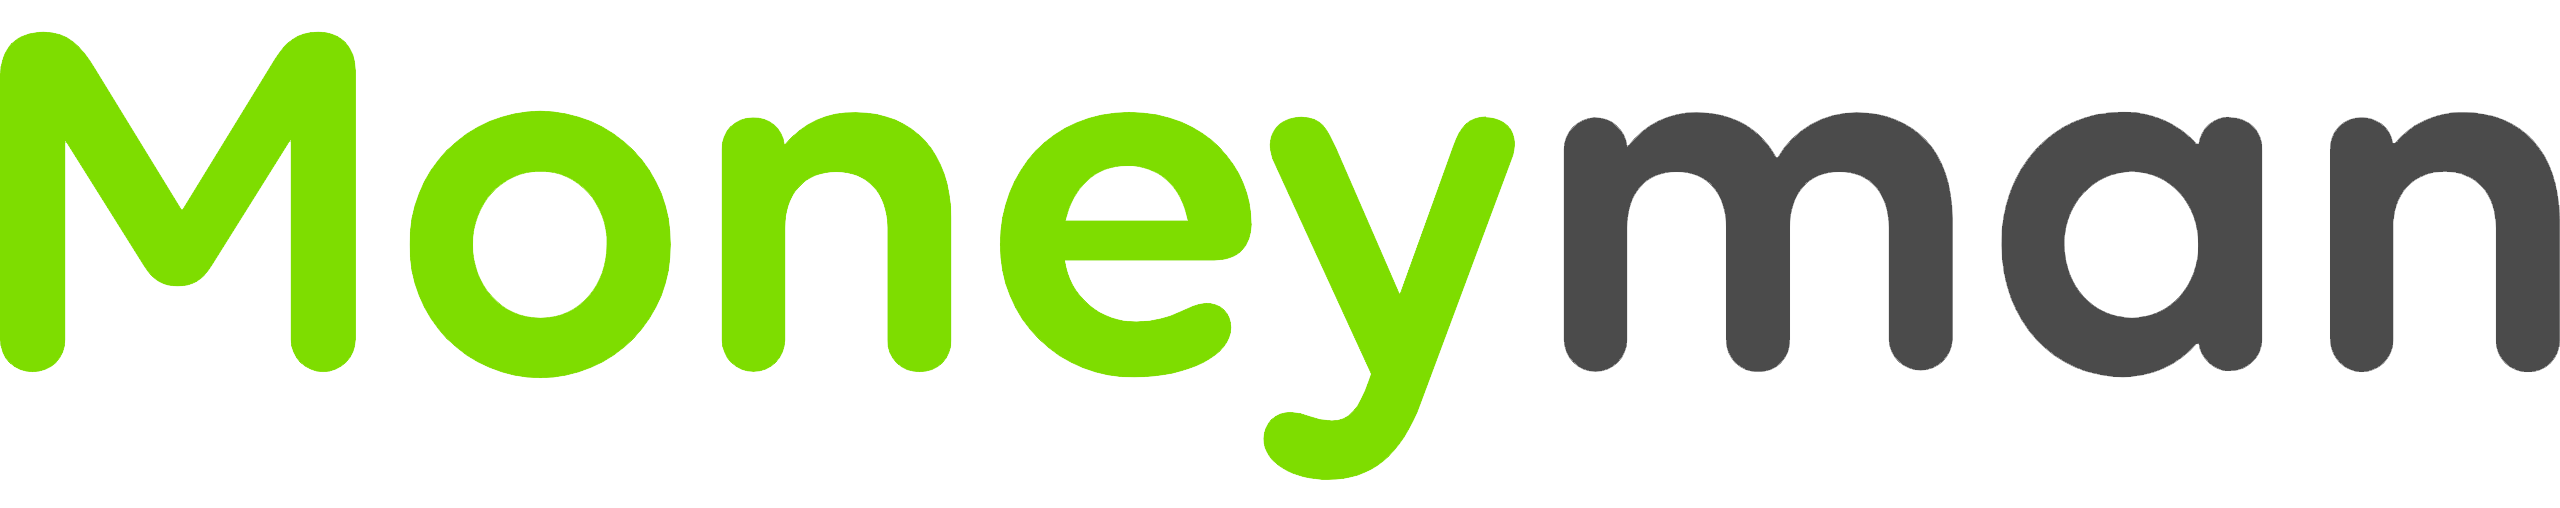 moneyman-logo.png